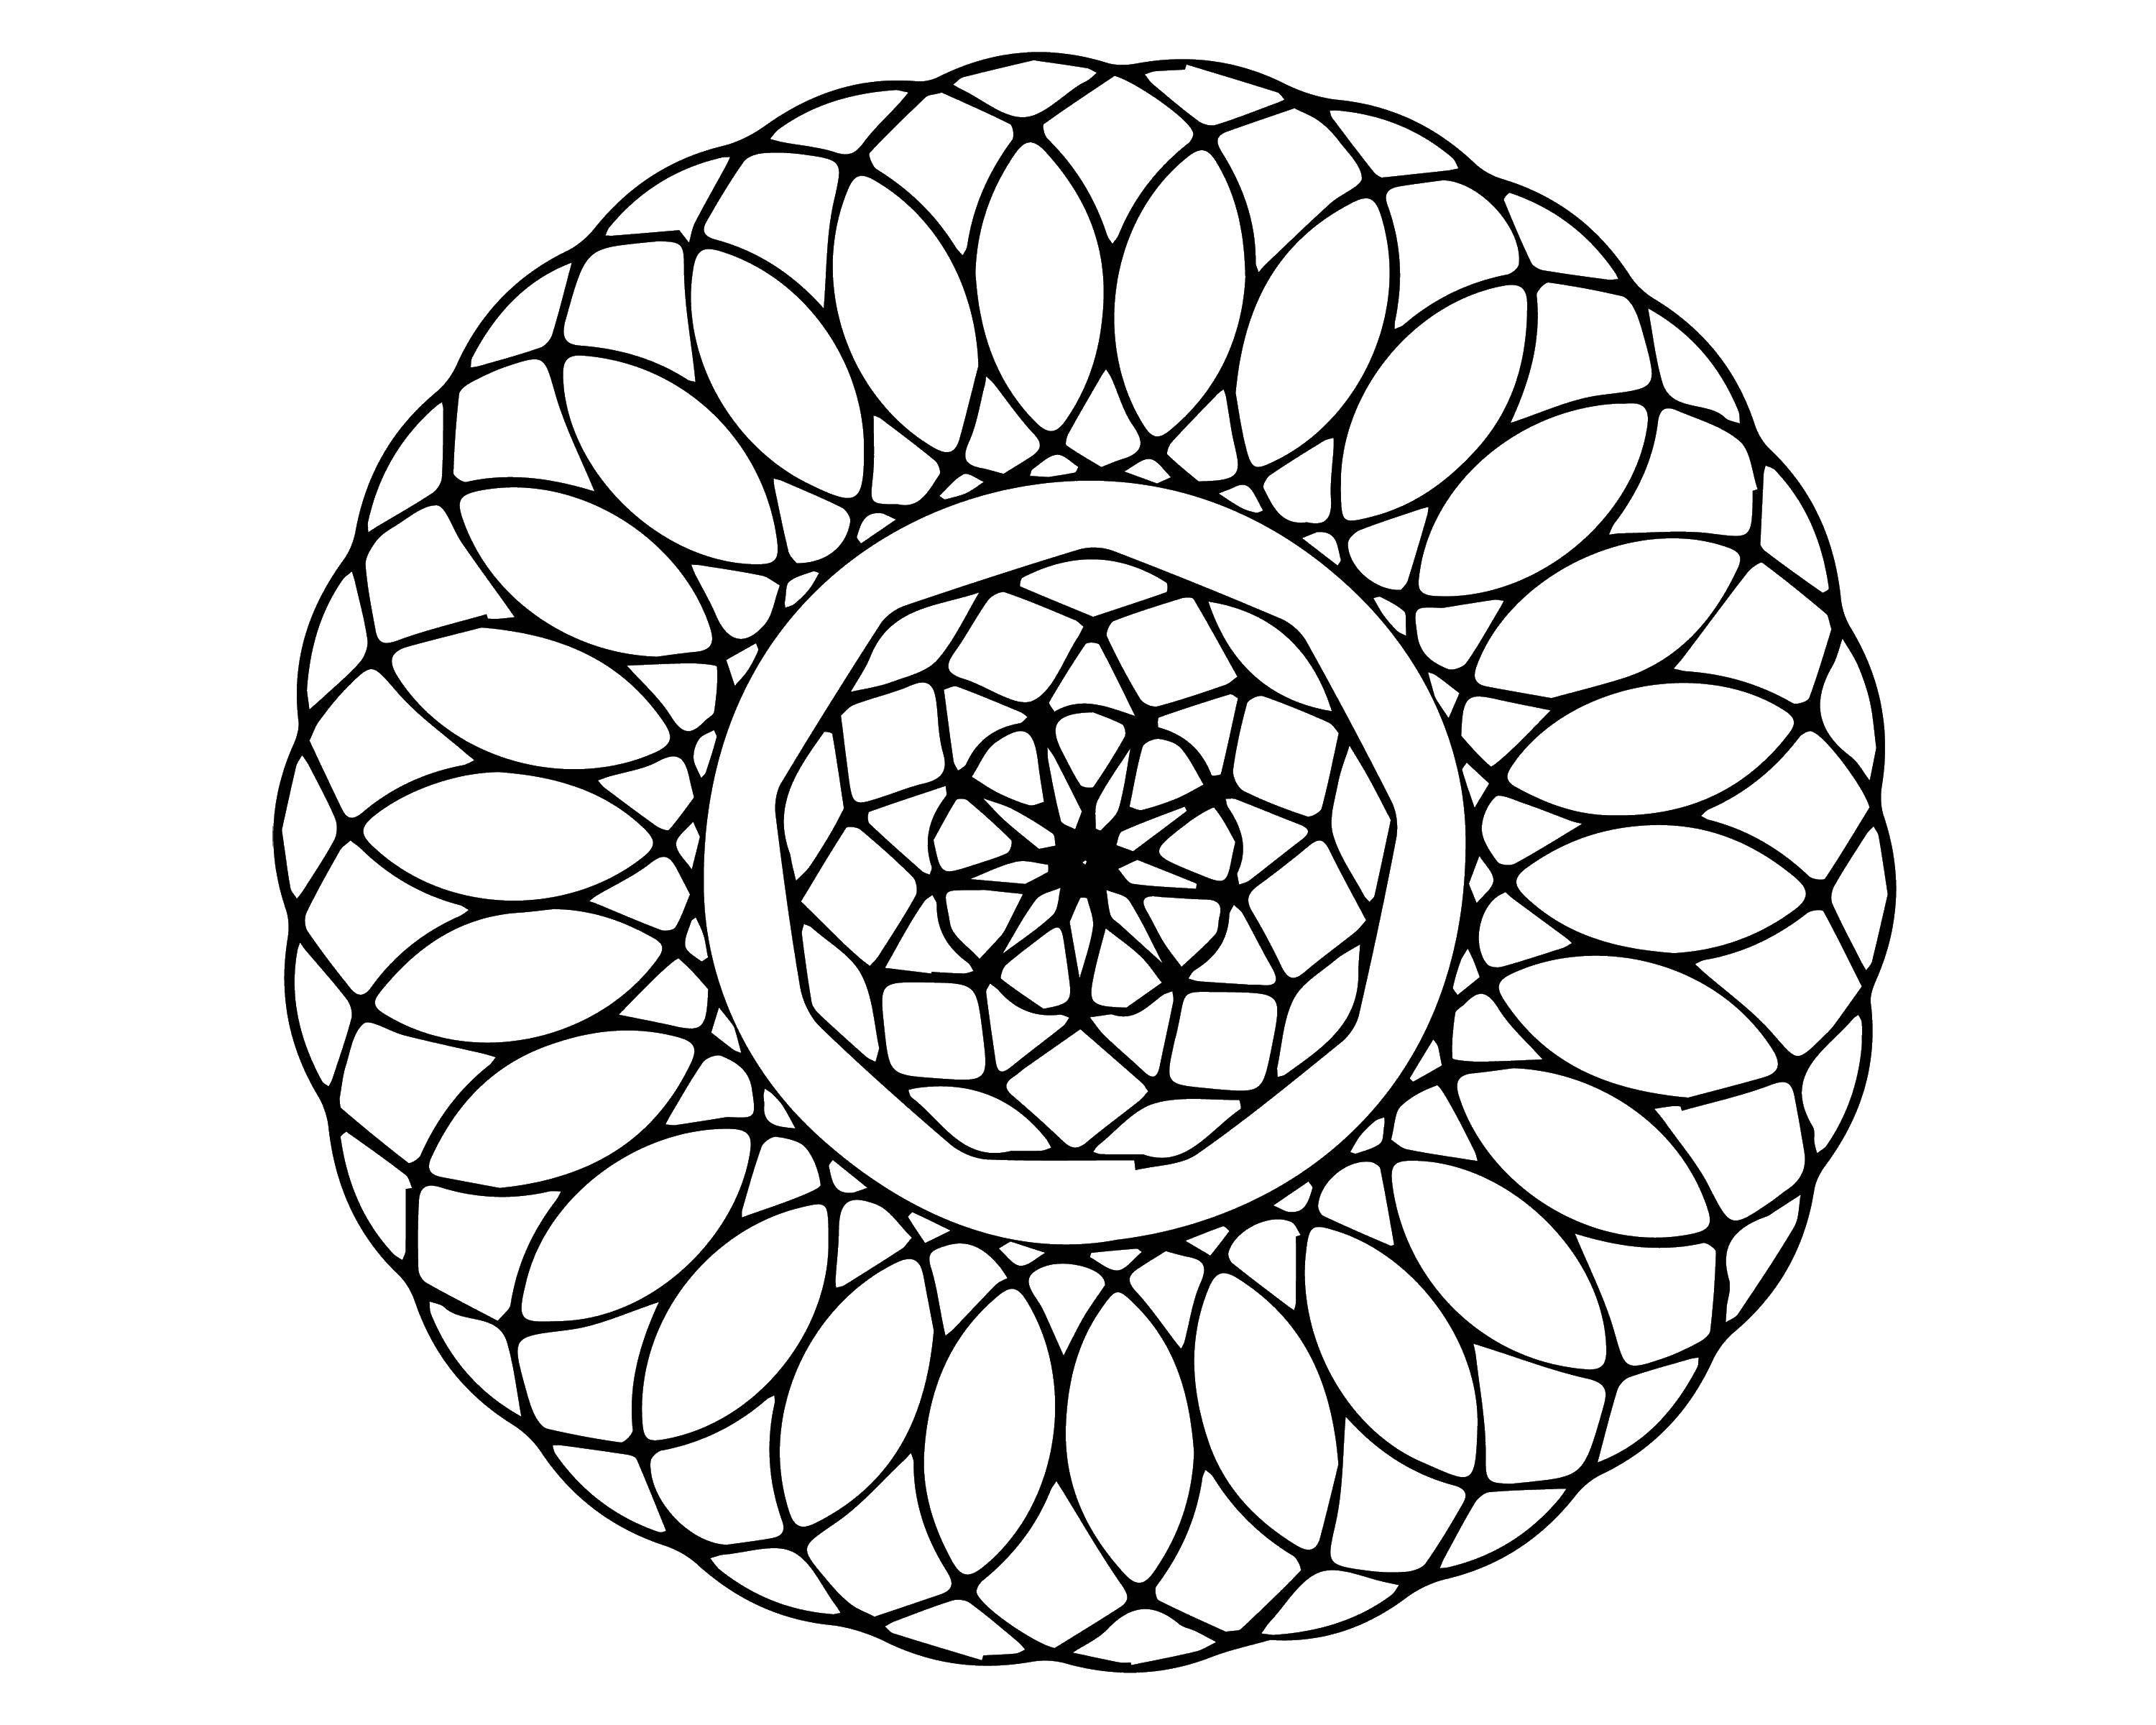 Coloring Swirly pattern. Category pattern . Tags:  Patterns, geometric.